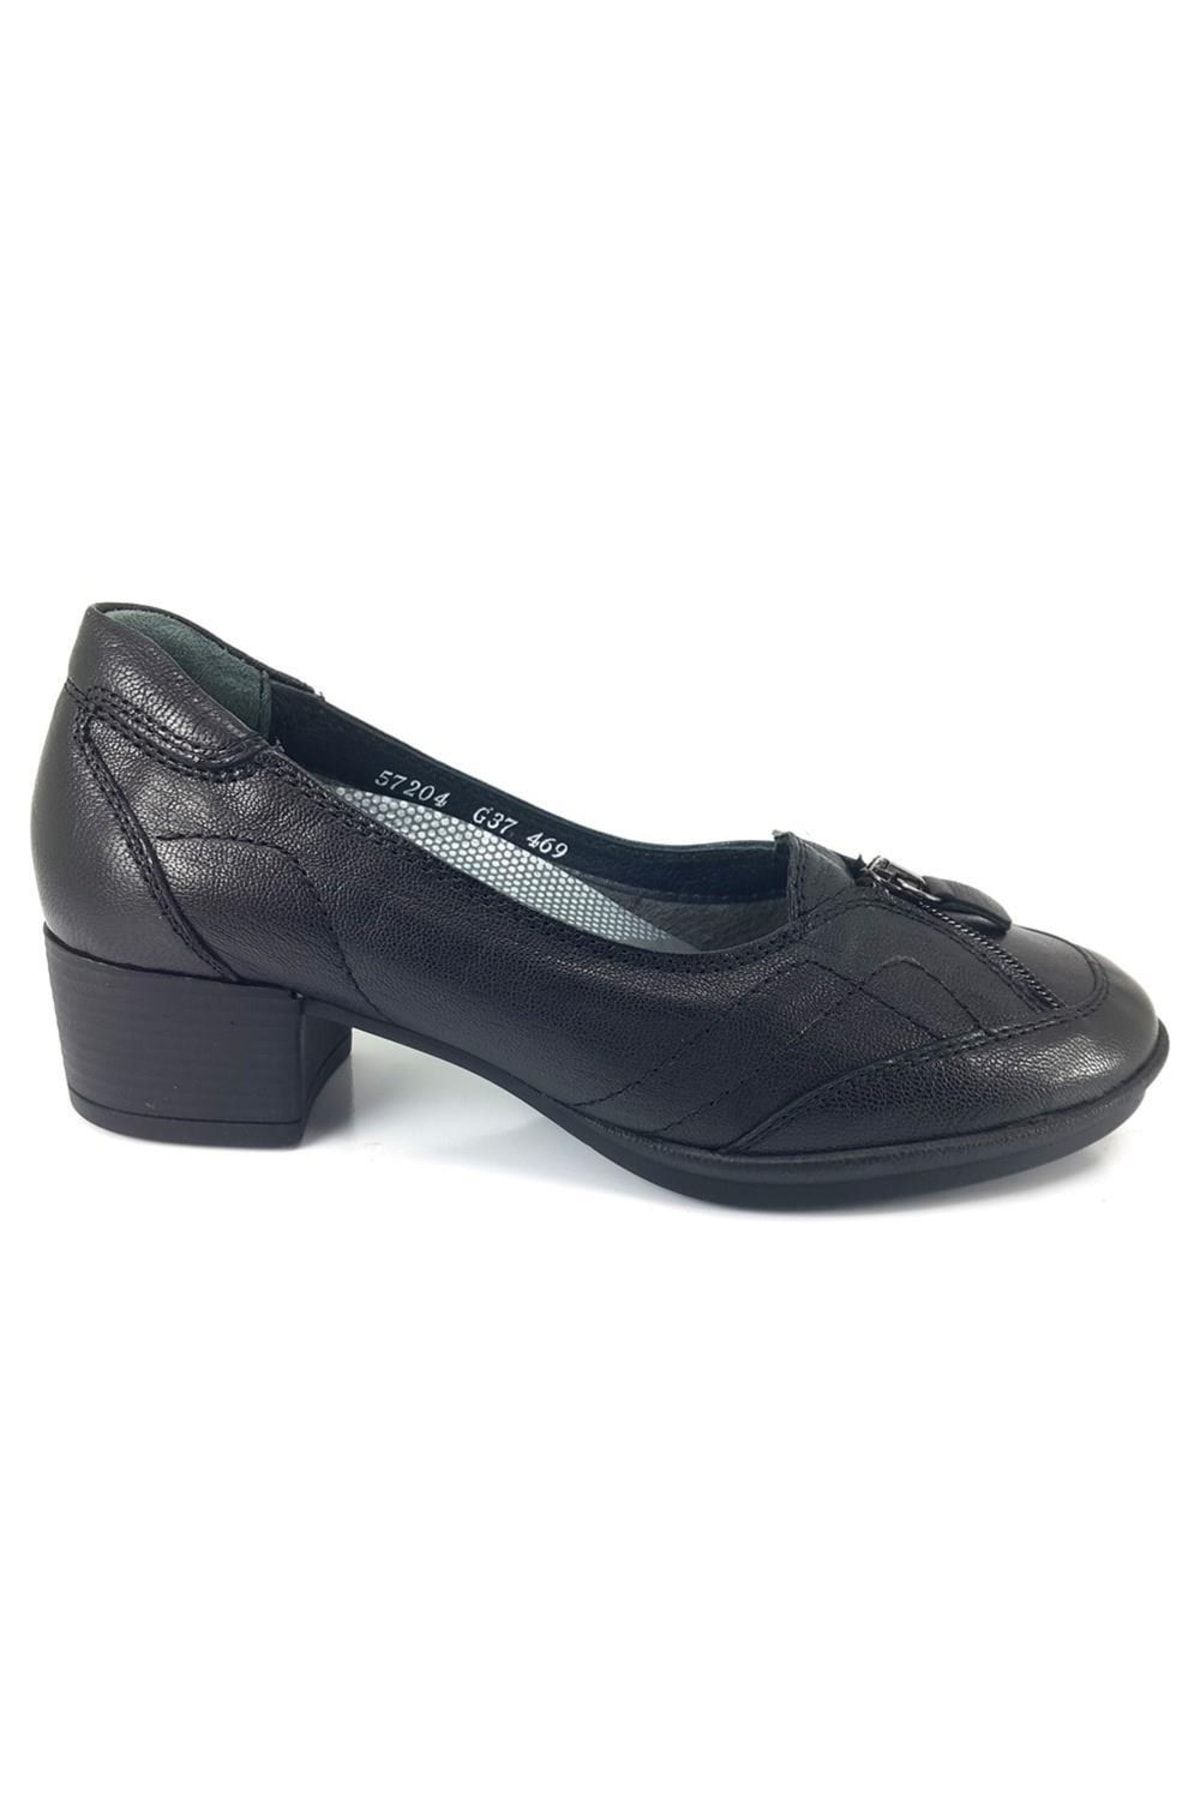 Forelli 57204 Topuklu Deri Klasik Kadın Ayakkabı